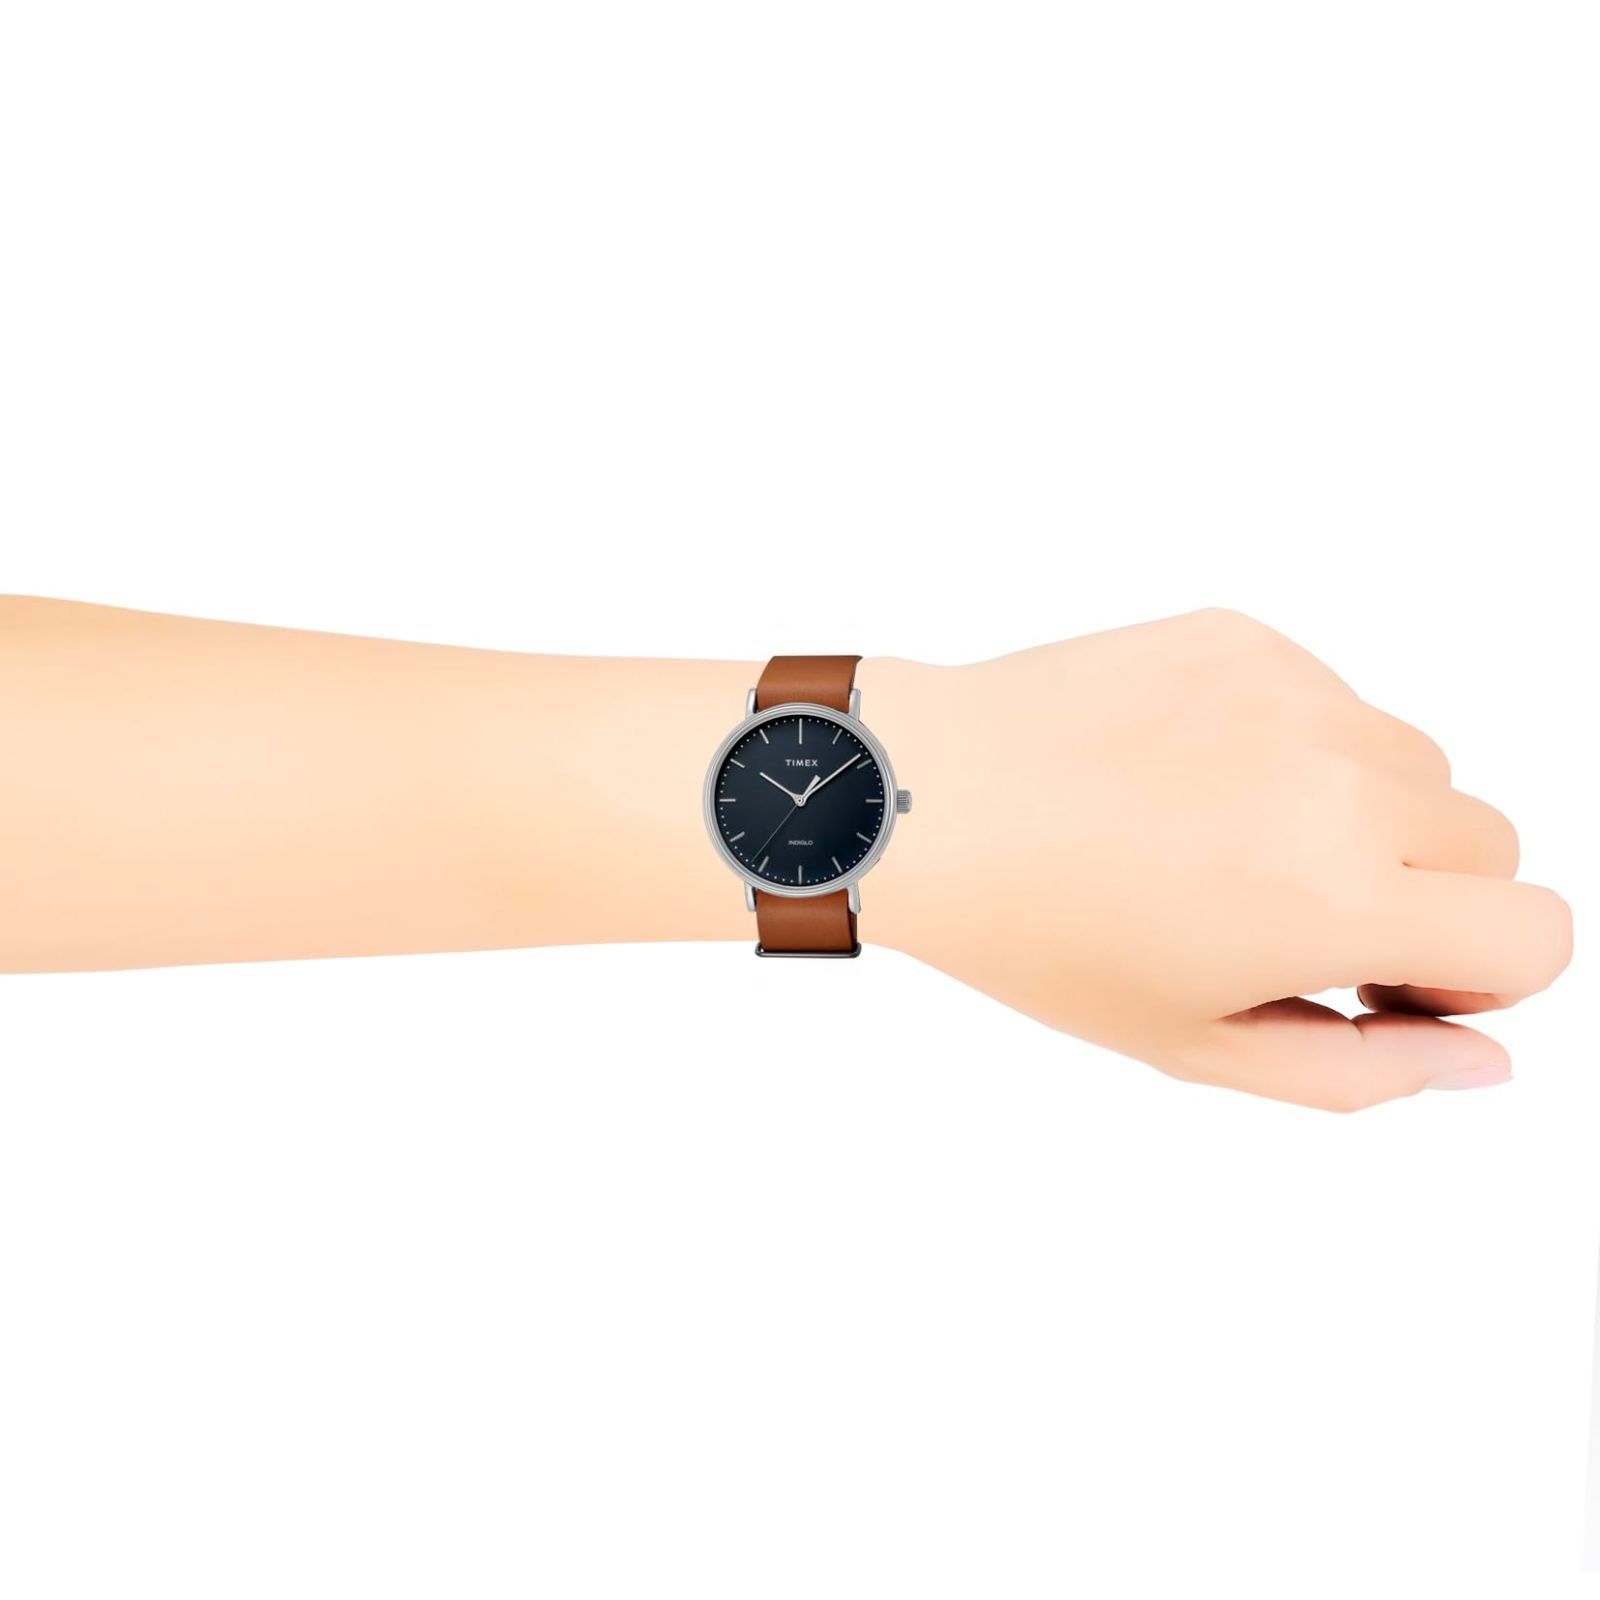 【色: ブルー/ブラウン】[タイメックス] 腕時計 ウィークエンダーフェアフィー